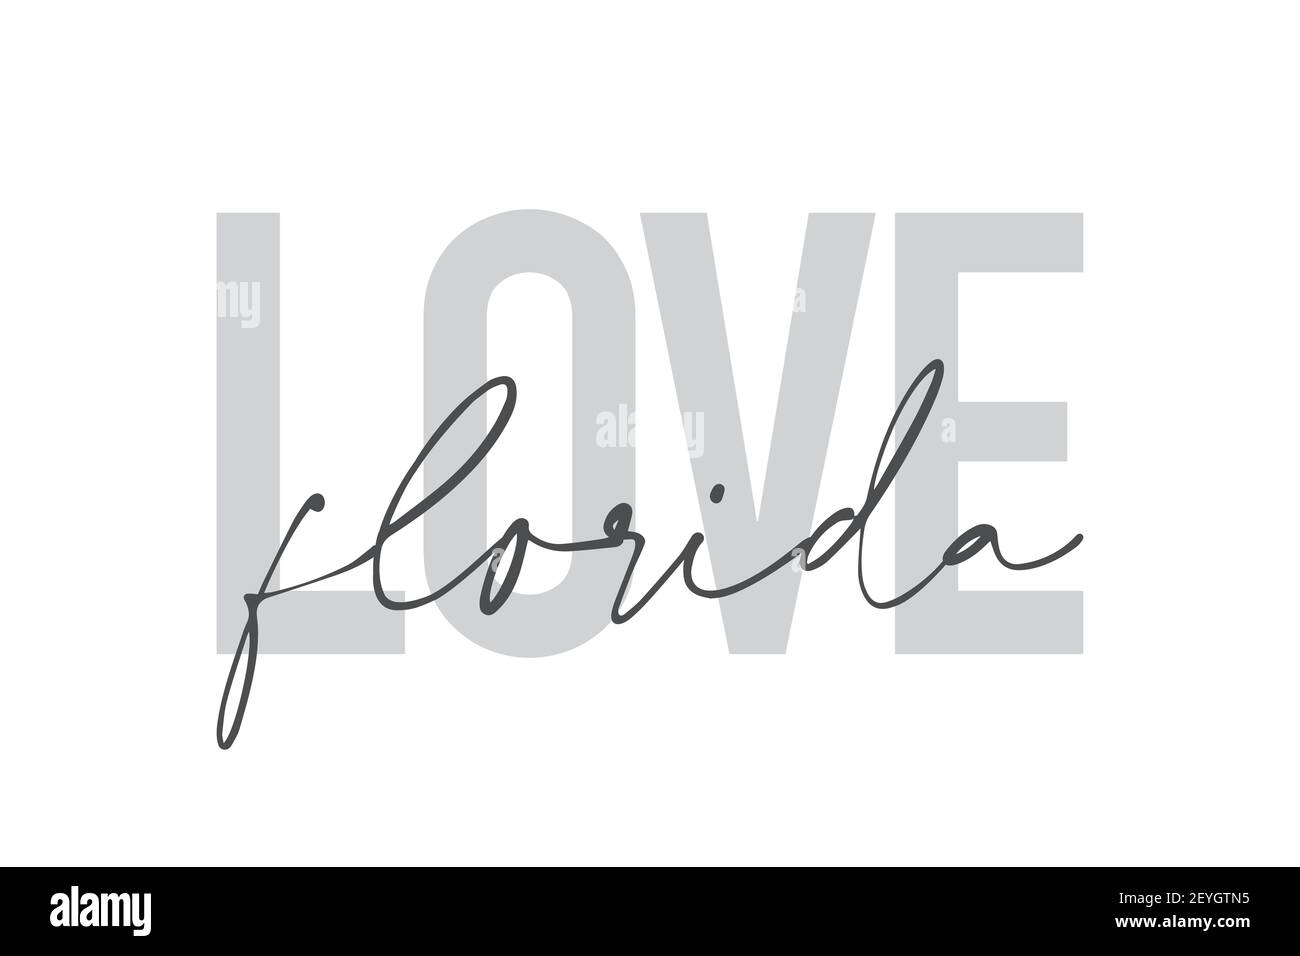 Design graphique moderne, urbain et simple d'un « Love Florida » aux couleurs grises. Typographie manuscrite, tendance et tendance Banque D'Images